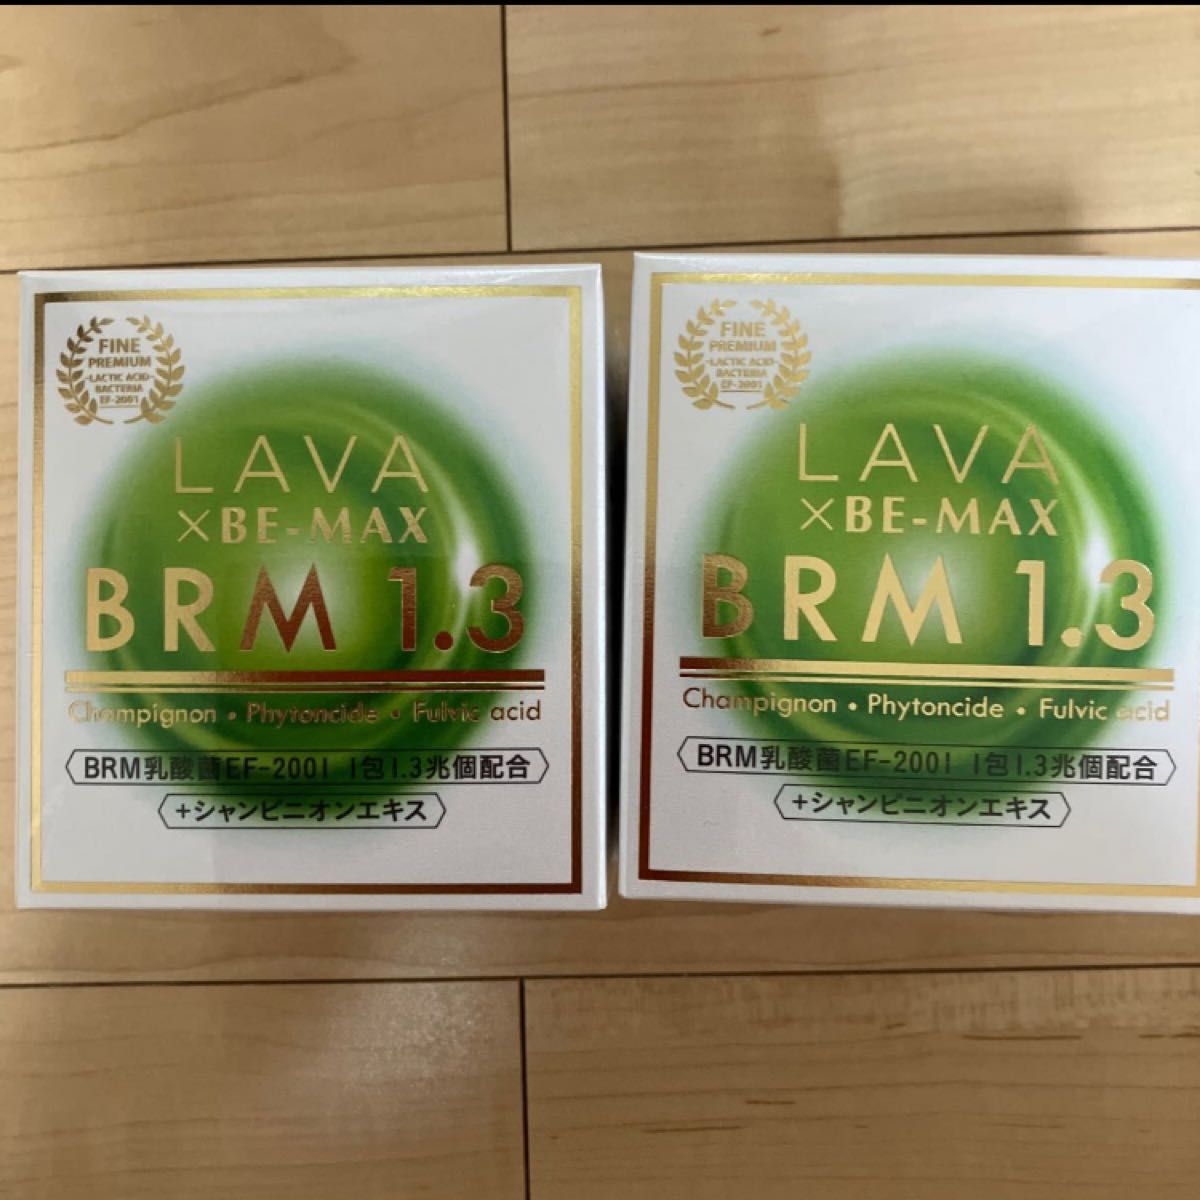 入庫 LAVA ビーマックス ベルム 1.3 BRM 乳酸菌 腸活